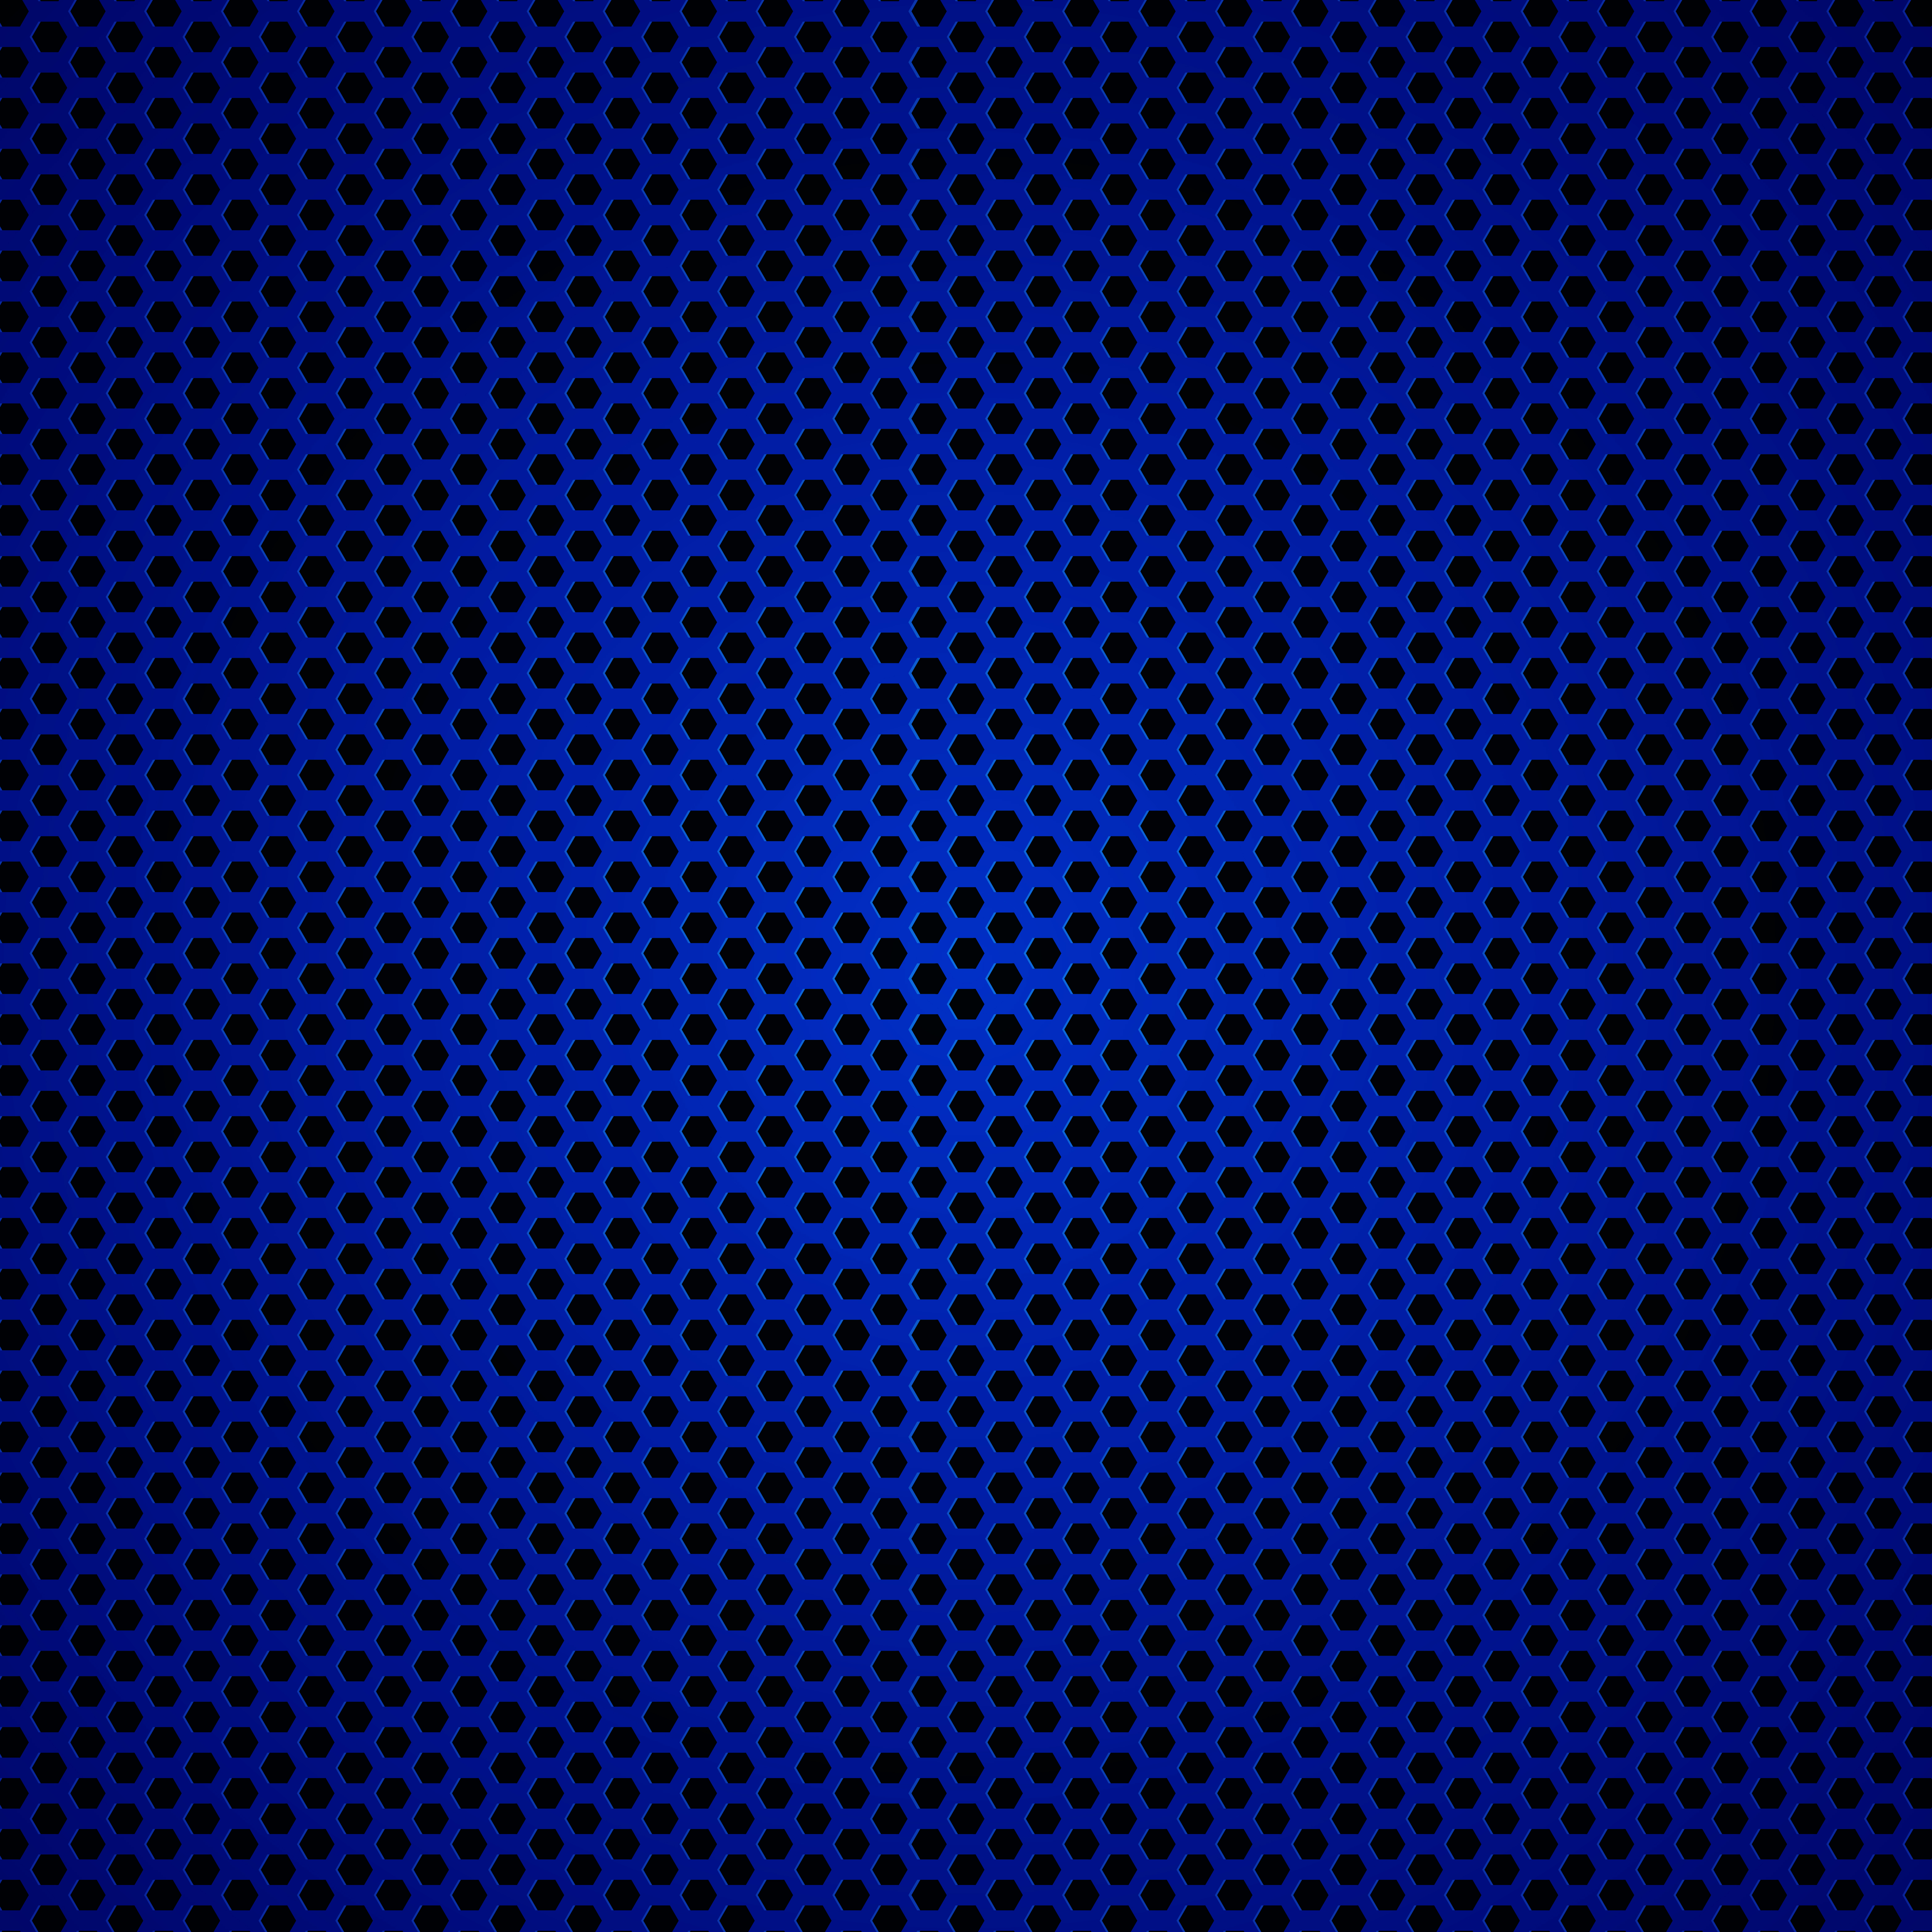 Blue carbon fiber texture wallpapers picture hd download - Carbon Fiber  Texture PPT Background